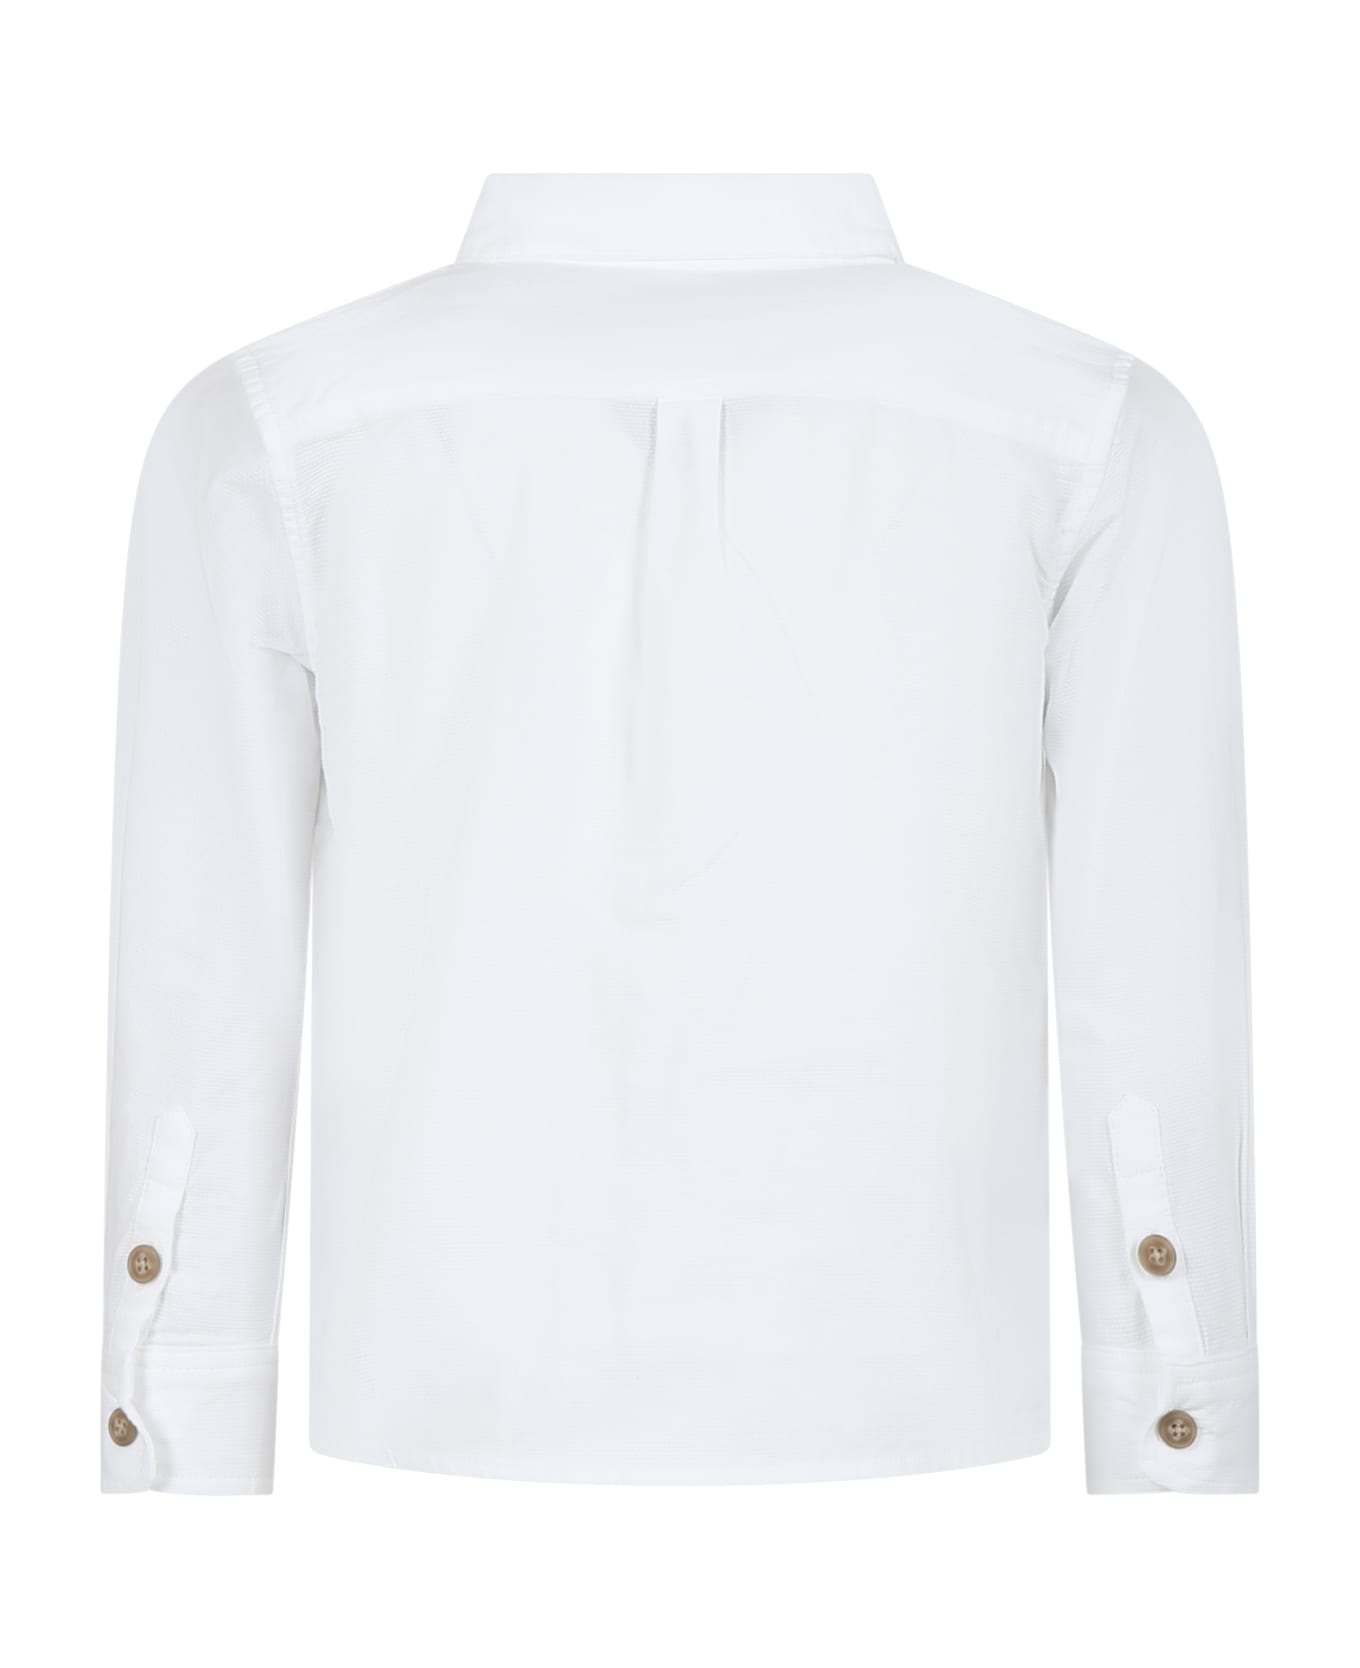 Petit Bateau White Shirt For Boy - White